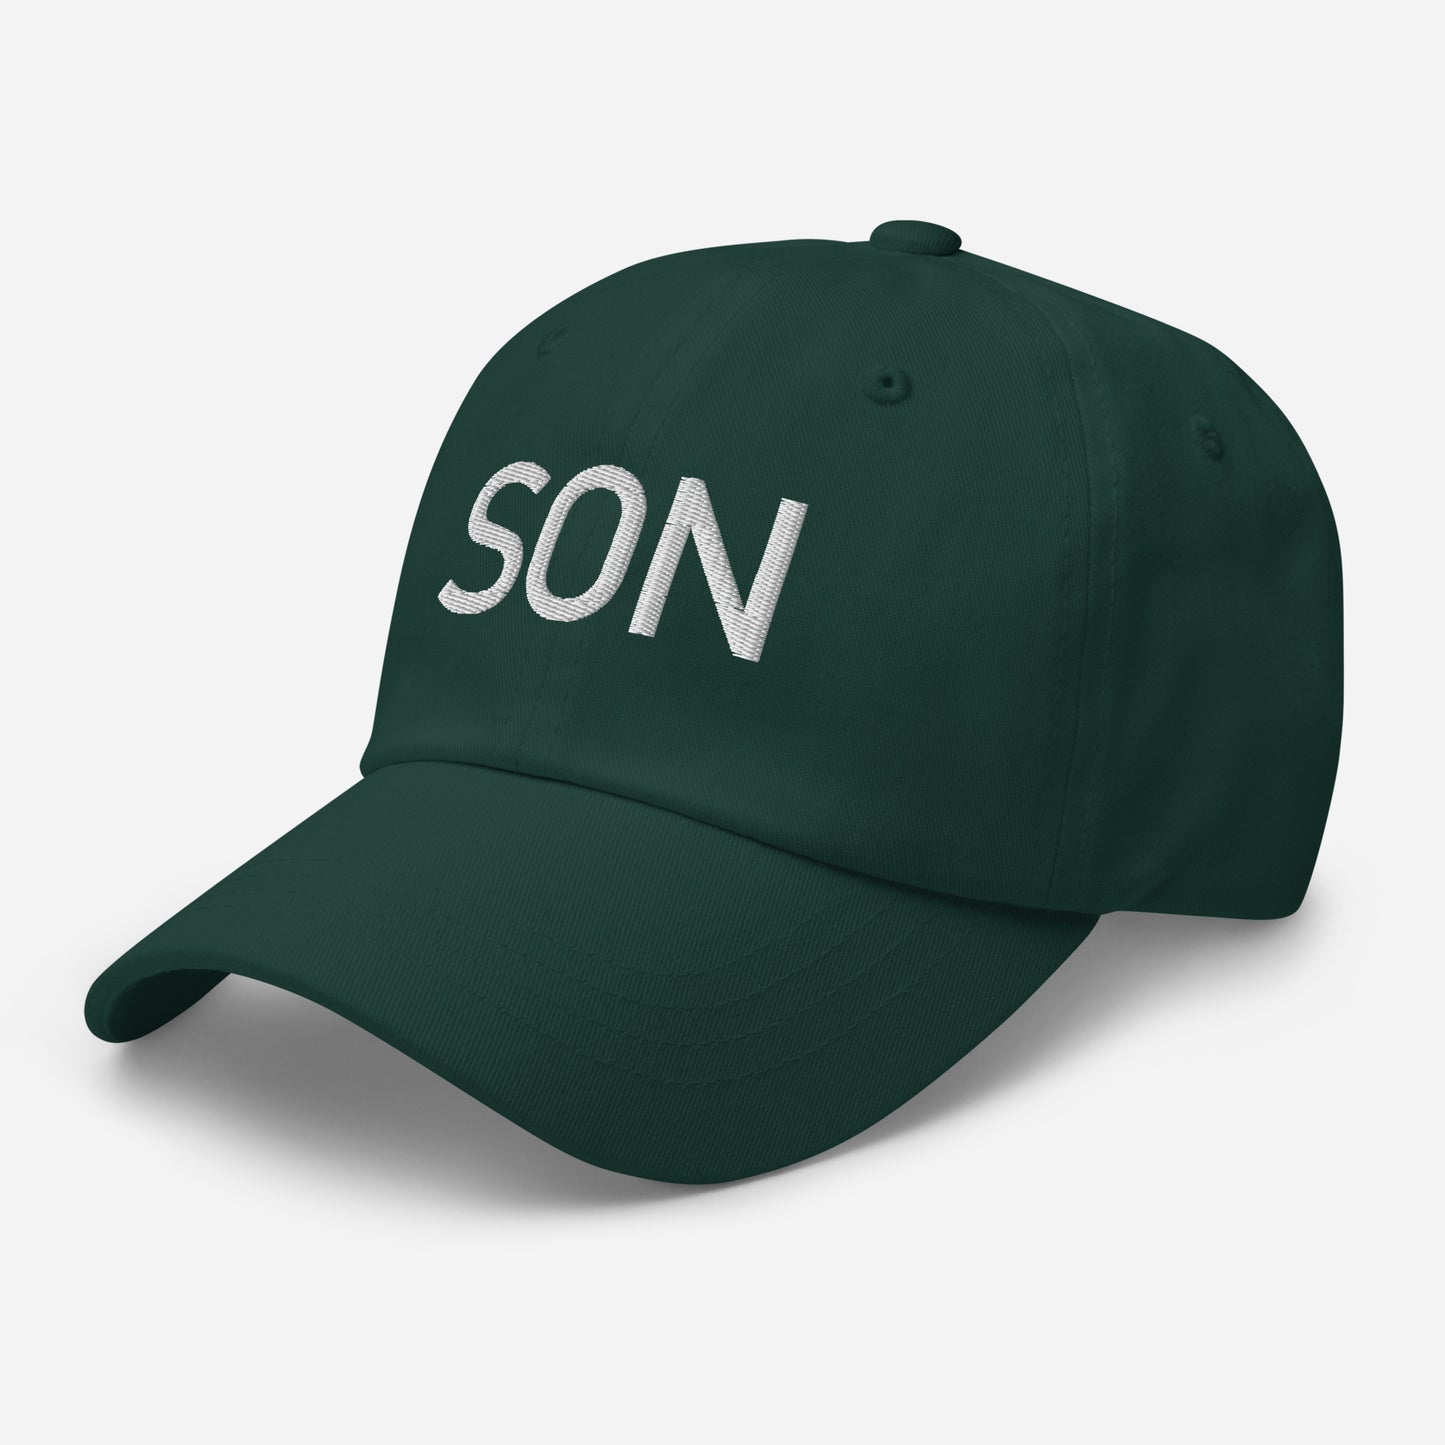 Son - Sustainably Made Baseball Cap